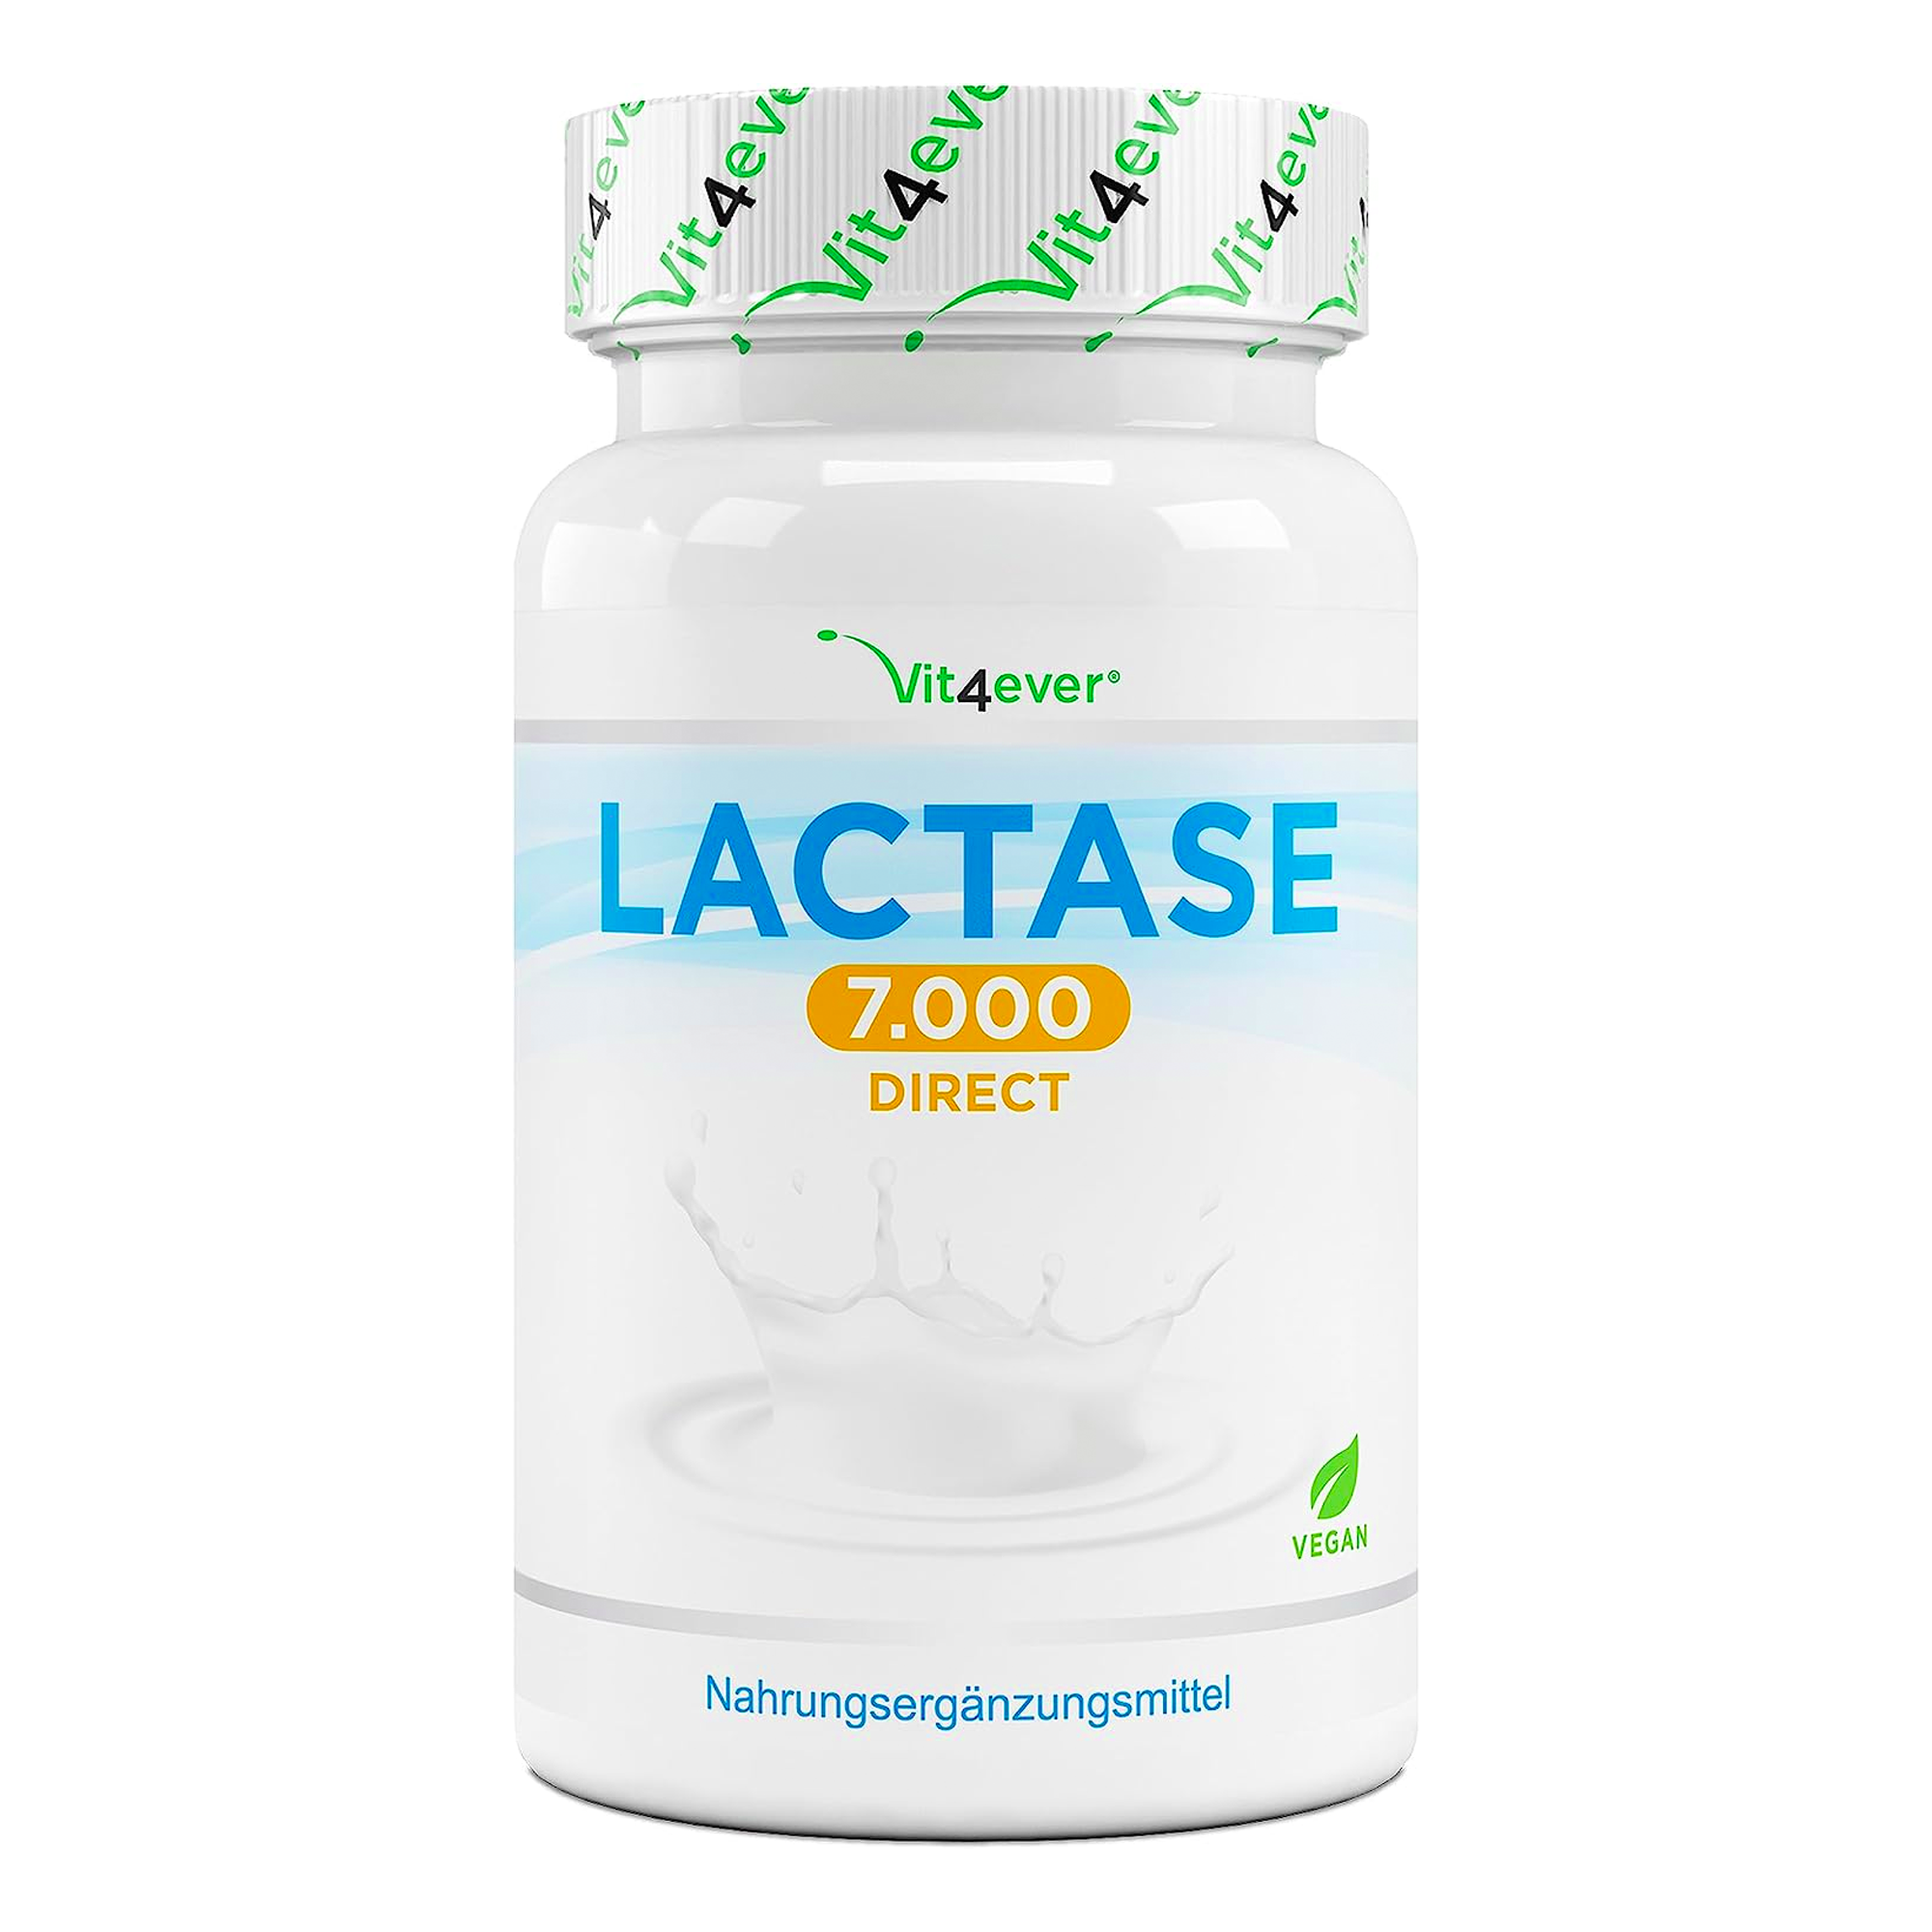 Vit4ever lactase tabletten